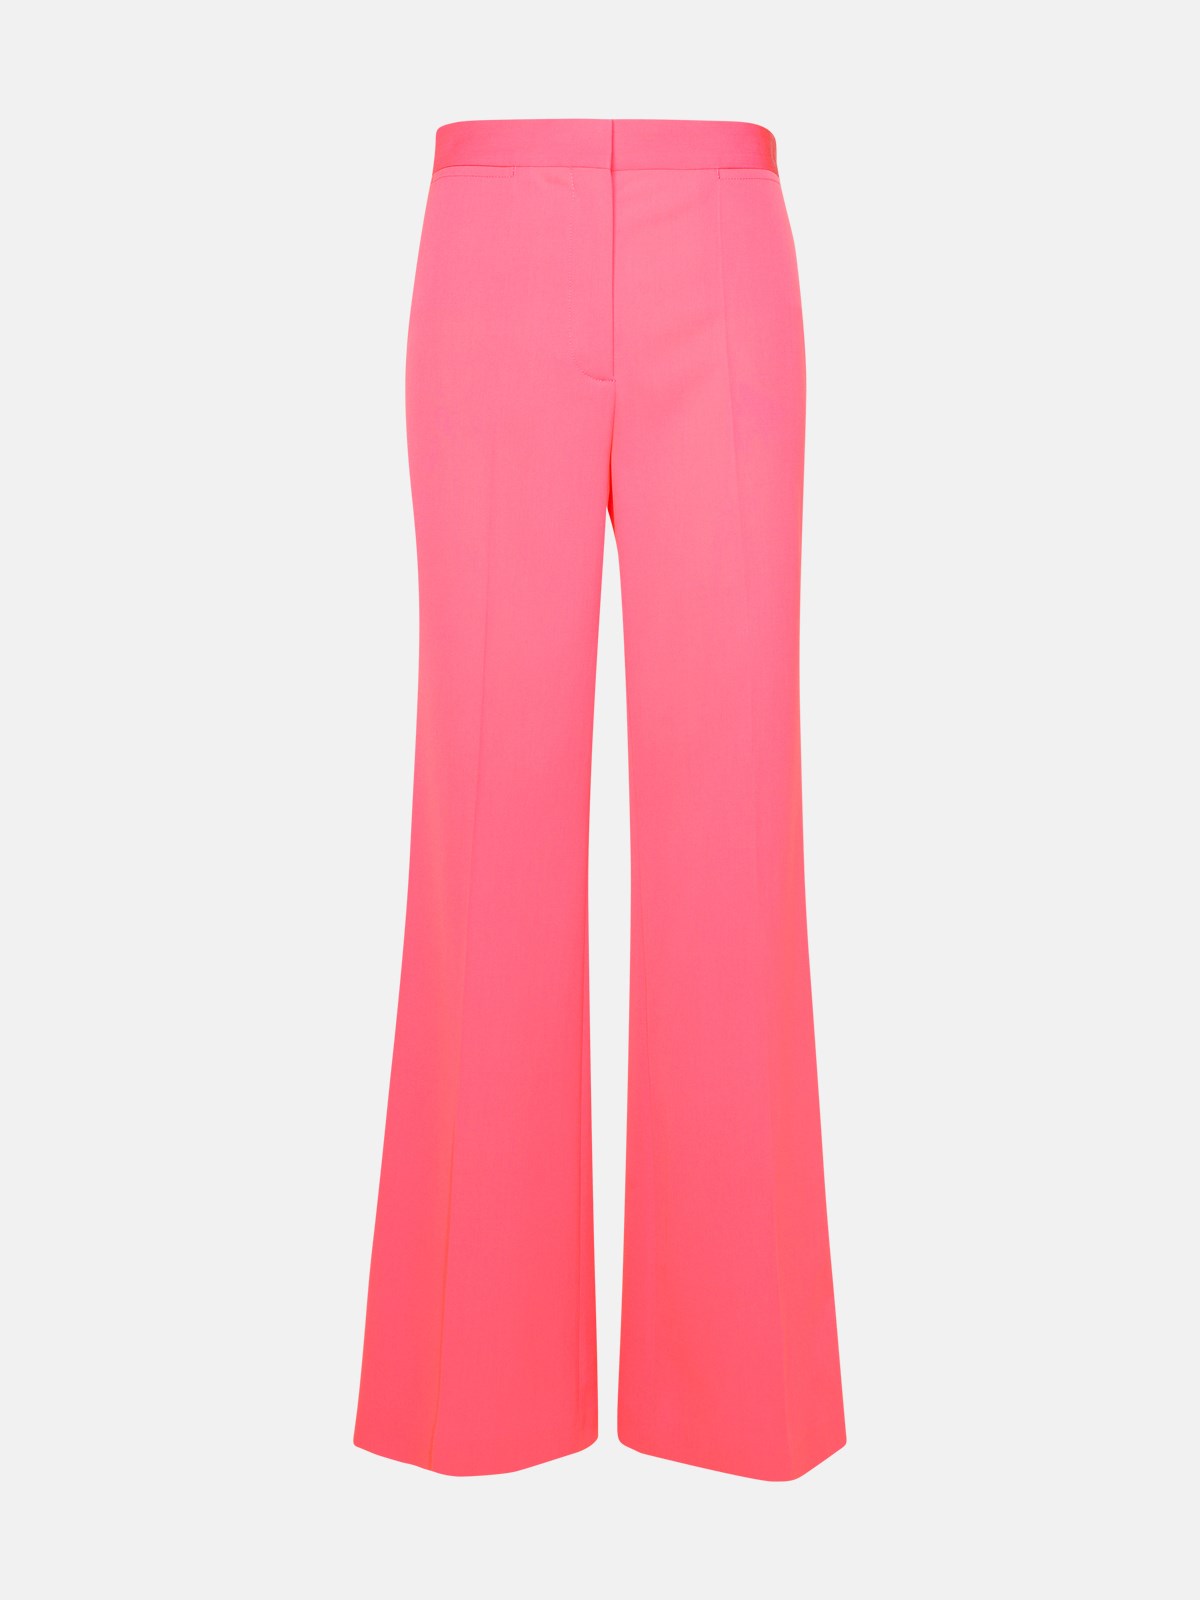 Stella Mccartney Watermelon Wool Blend Pants In Pink